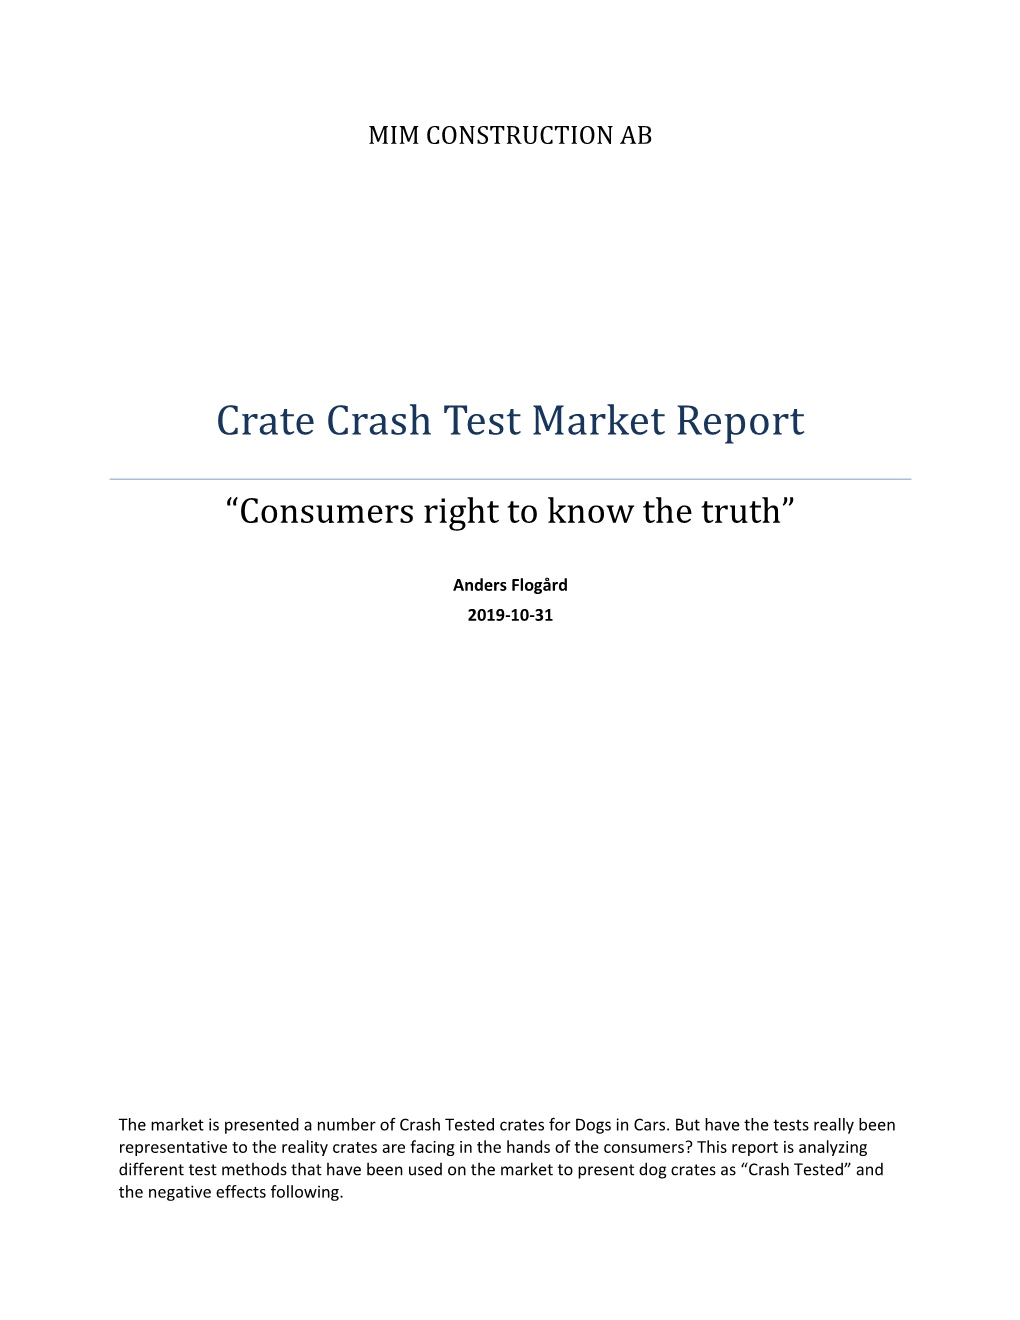 Crate Crash Test Market Report